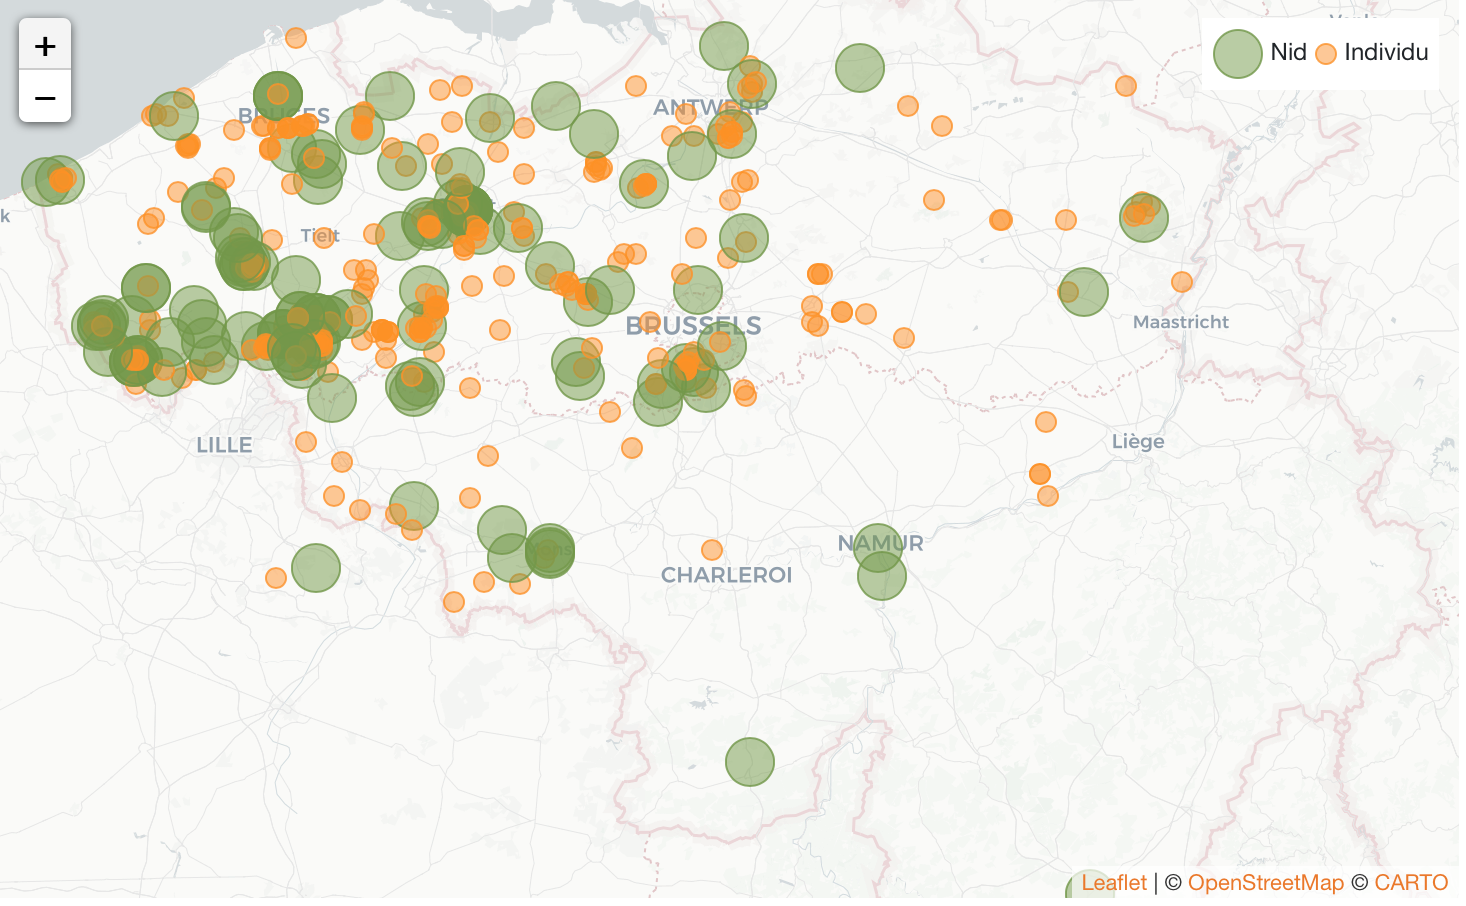 Nids du frelon asiatique et individus signalés en Belgique en mai 2020 (source: vespawatch.be)